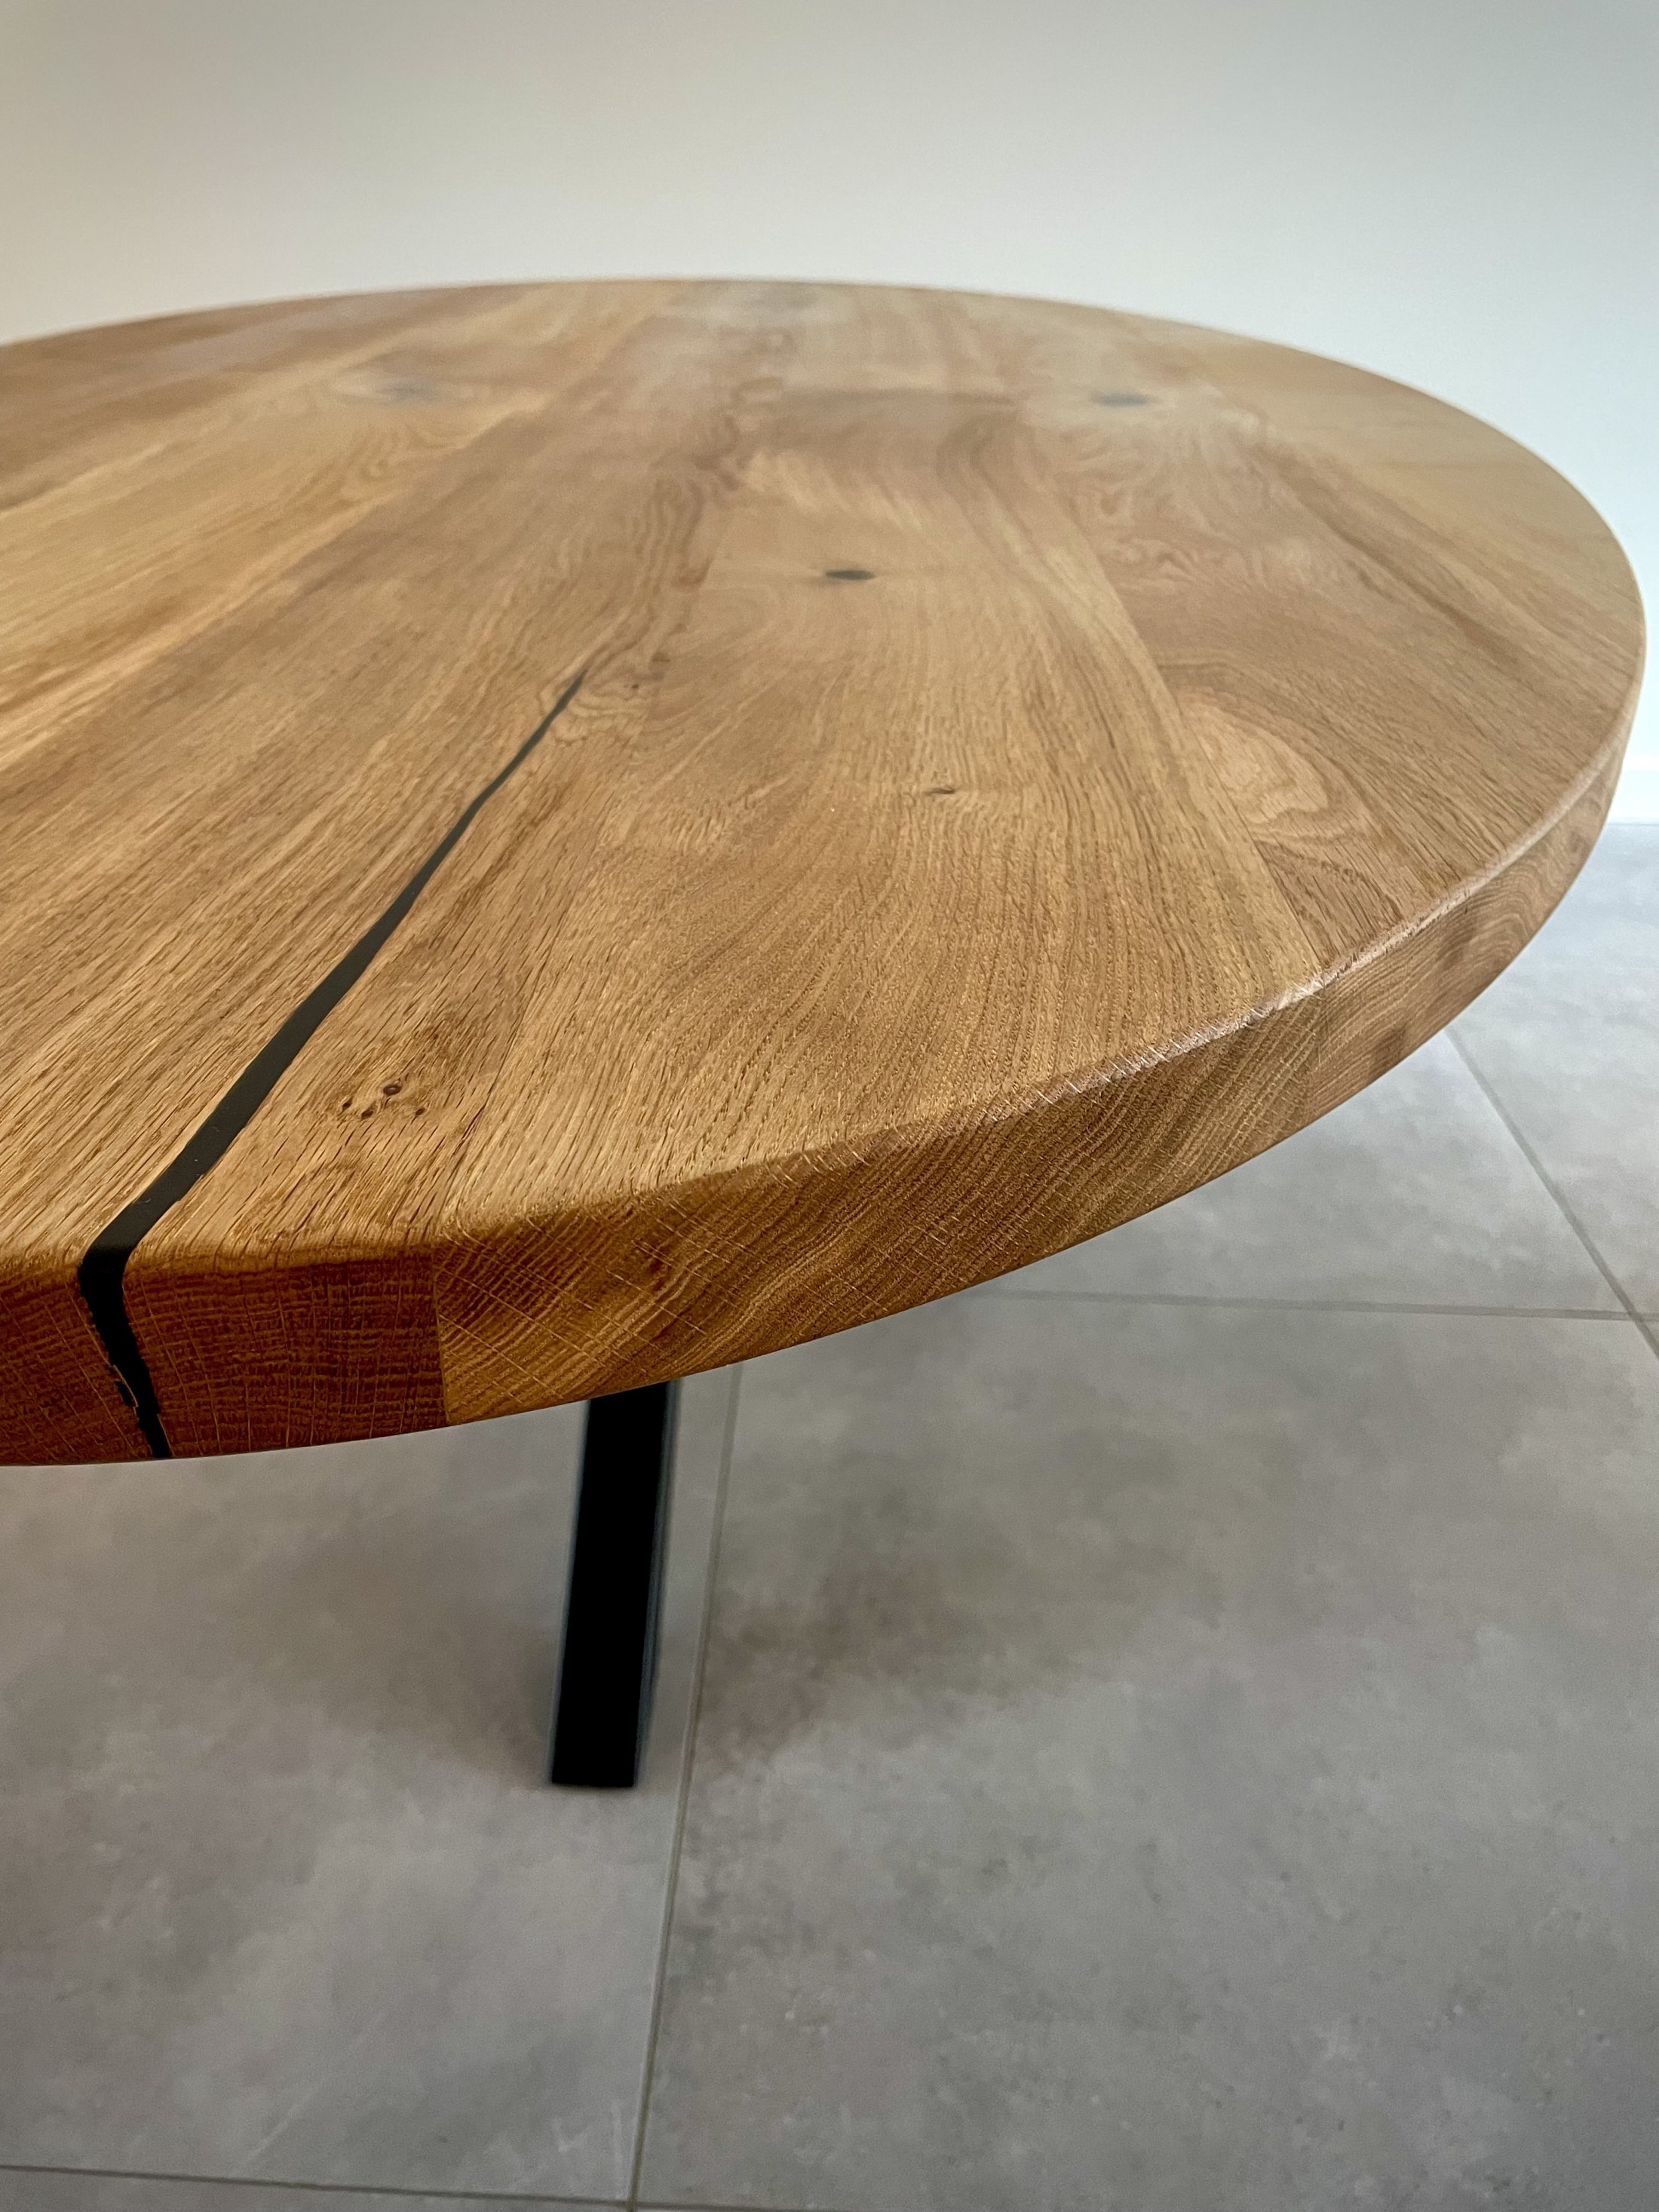 Ovale tafels - tuls-meubel-design-ovale-tafel-tamara-4